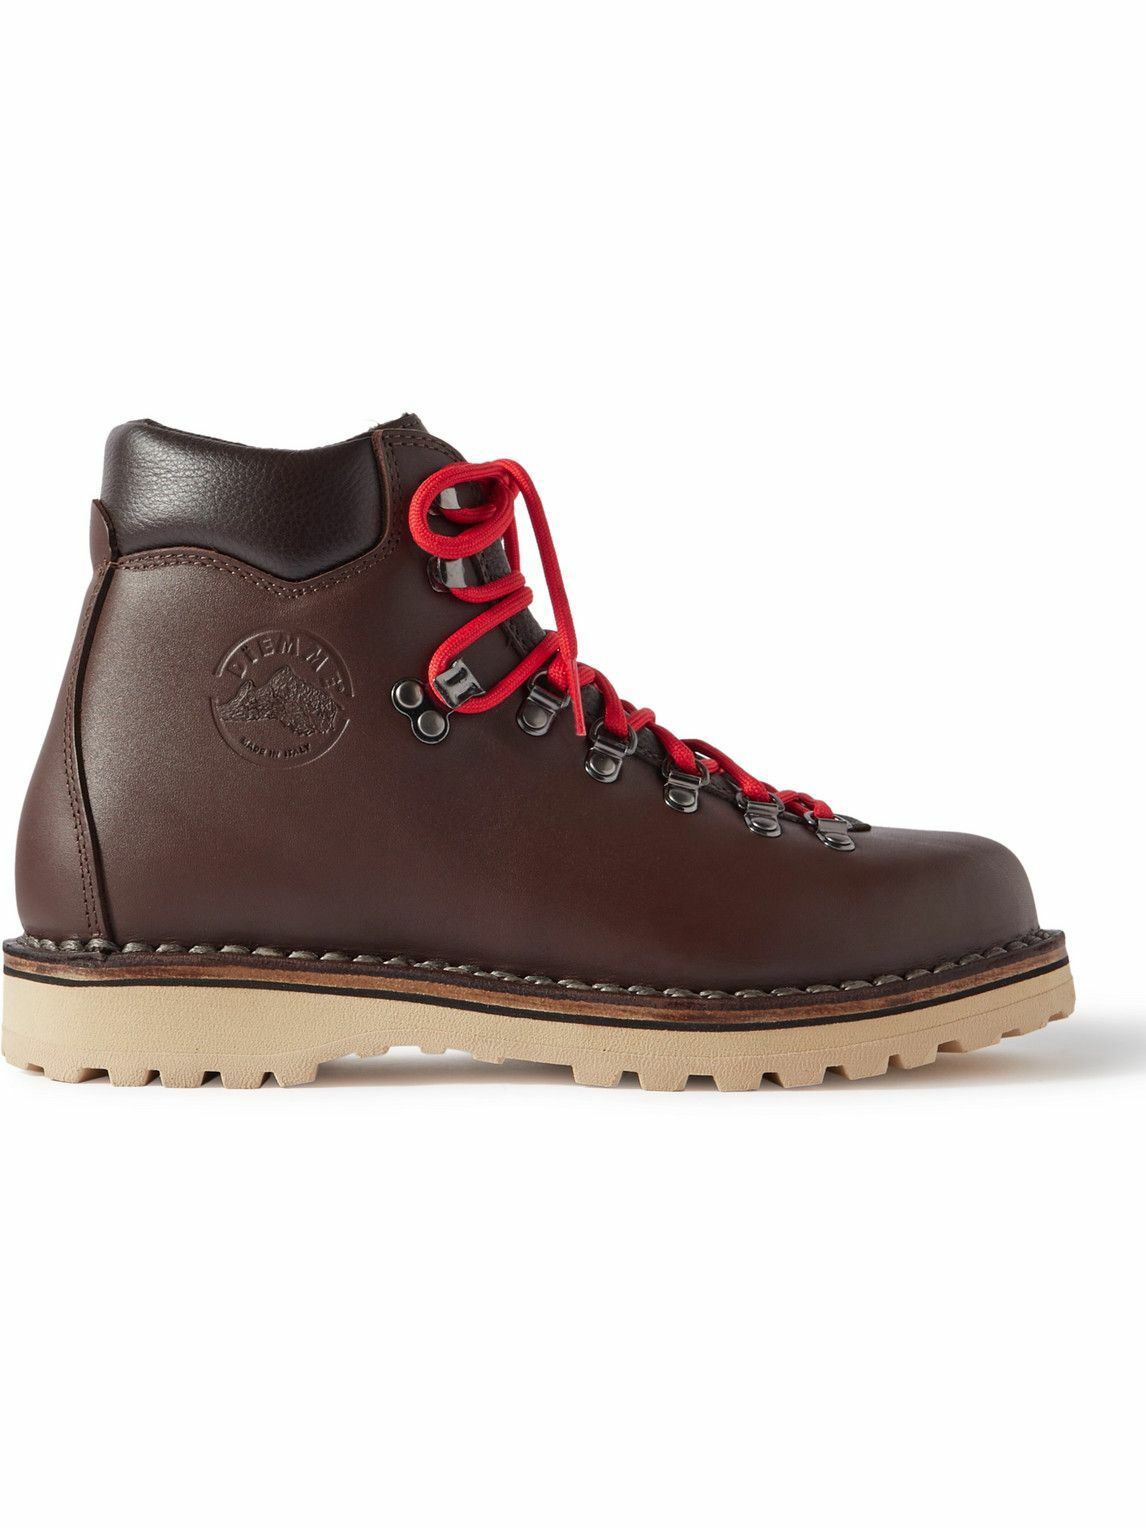 Diemme - Roccia Vet Leather Hiking Boots - Brown Diemme